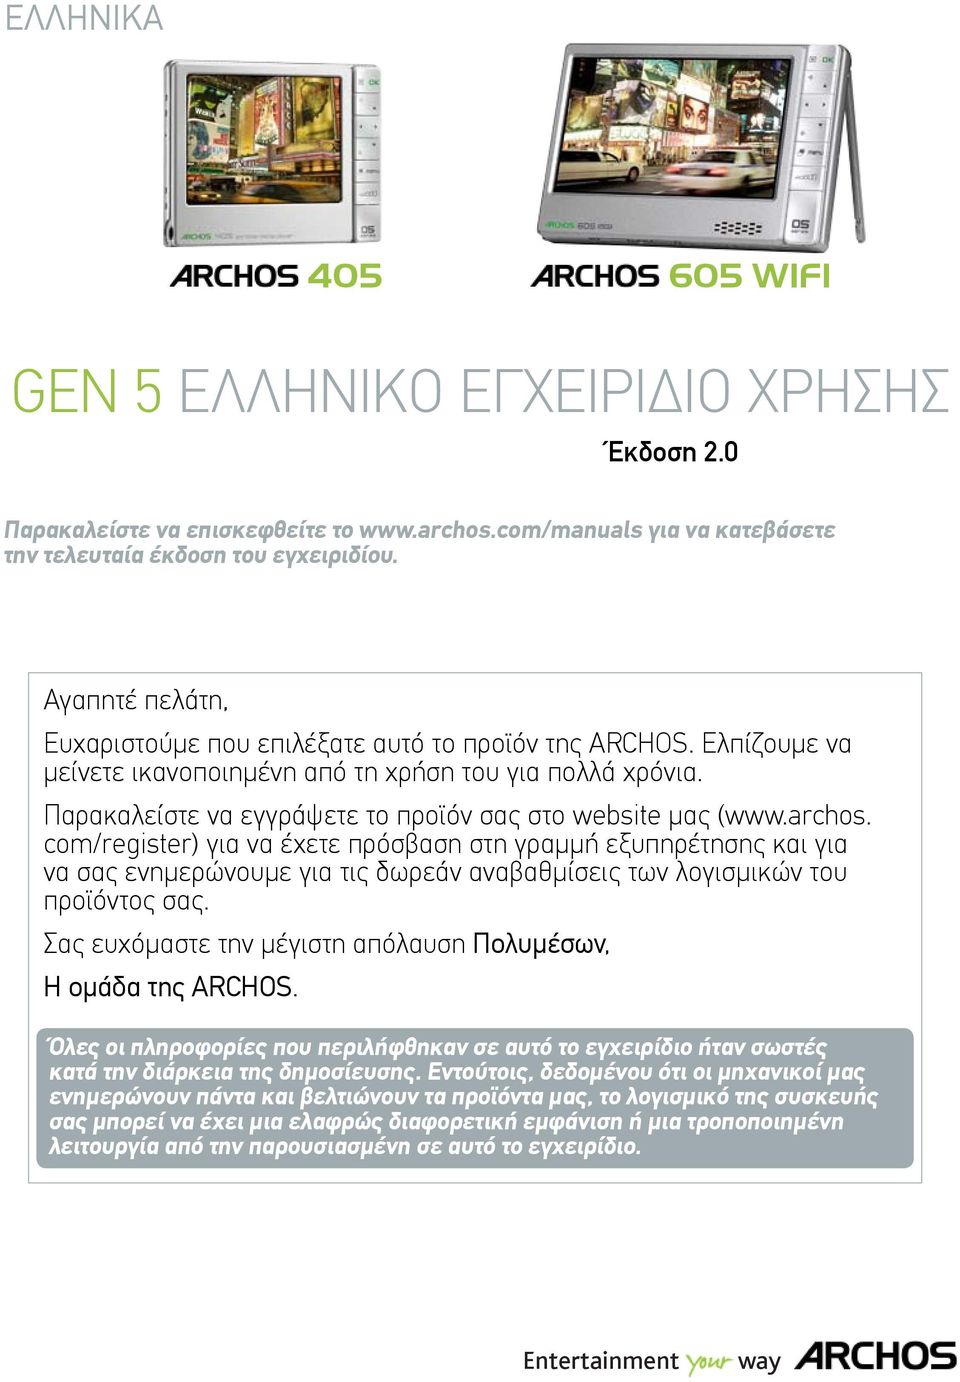 Παρακαλείστε να εγγράψετε το προϊόν σας στο website μας (www.archos.